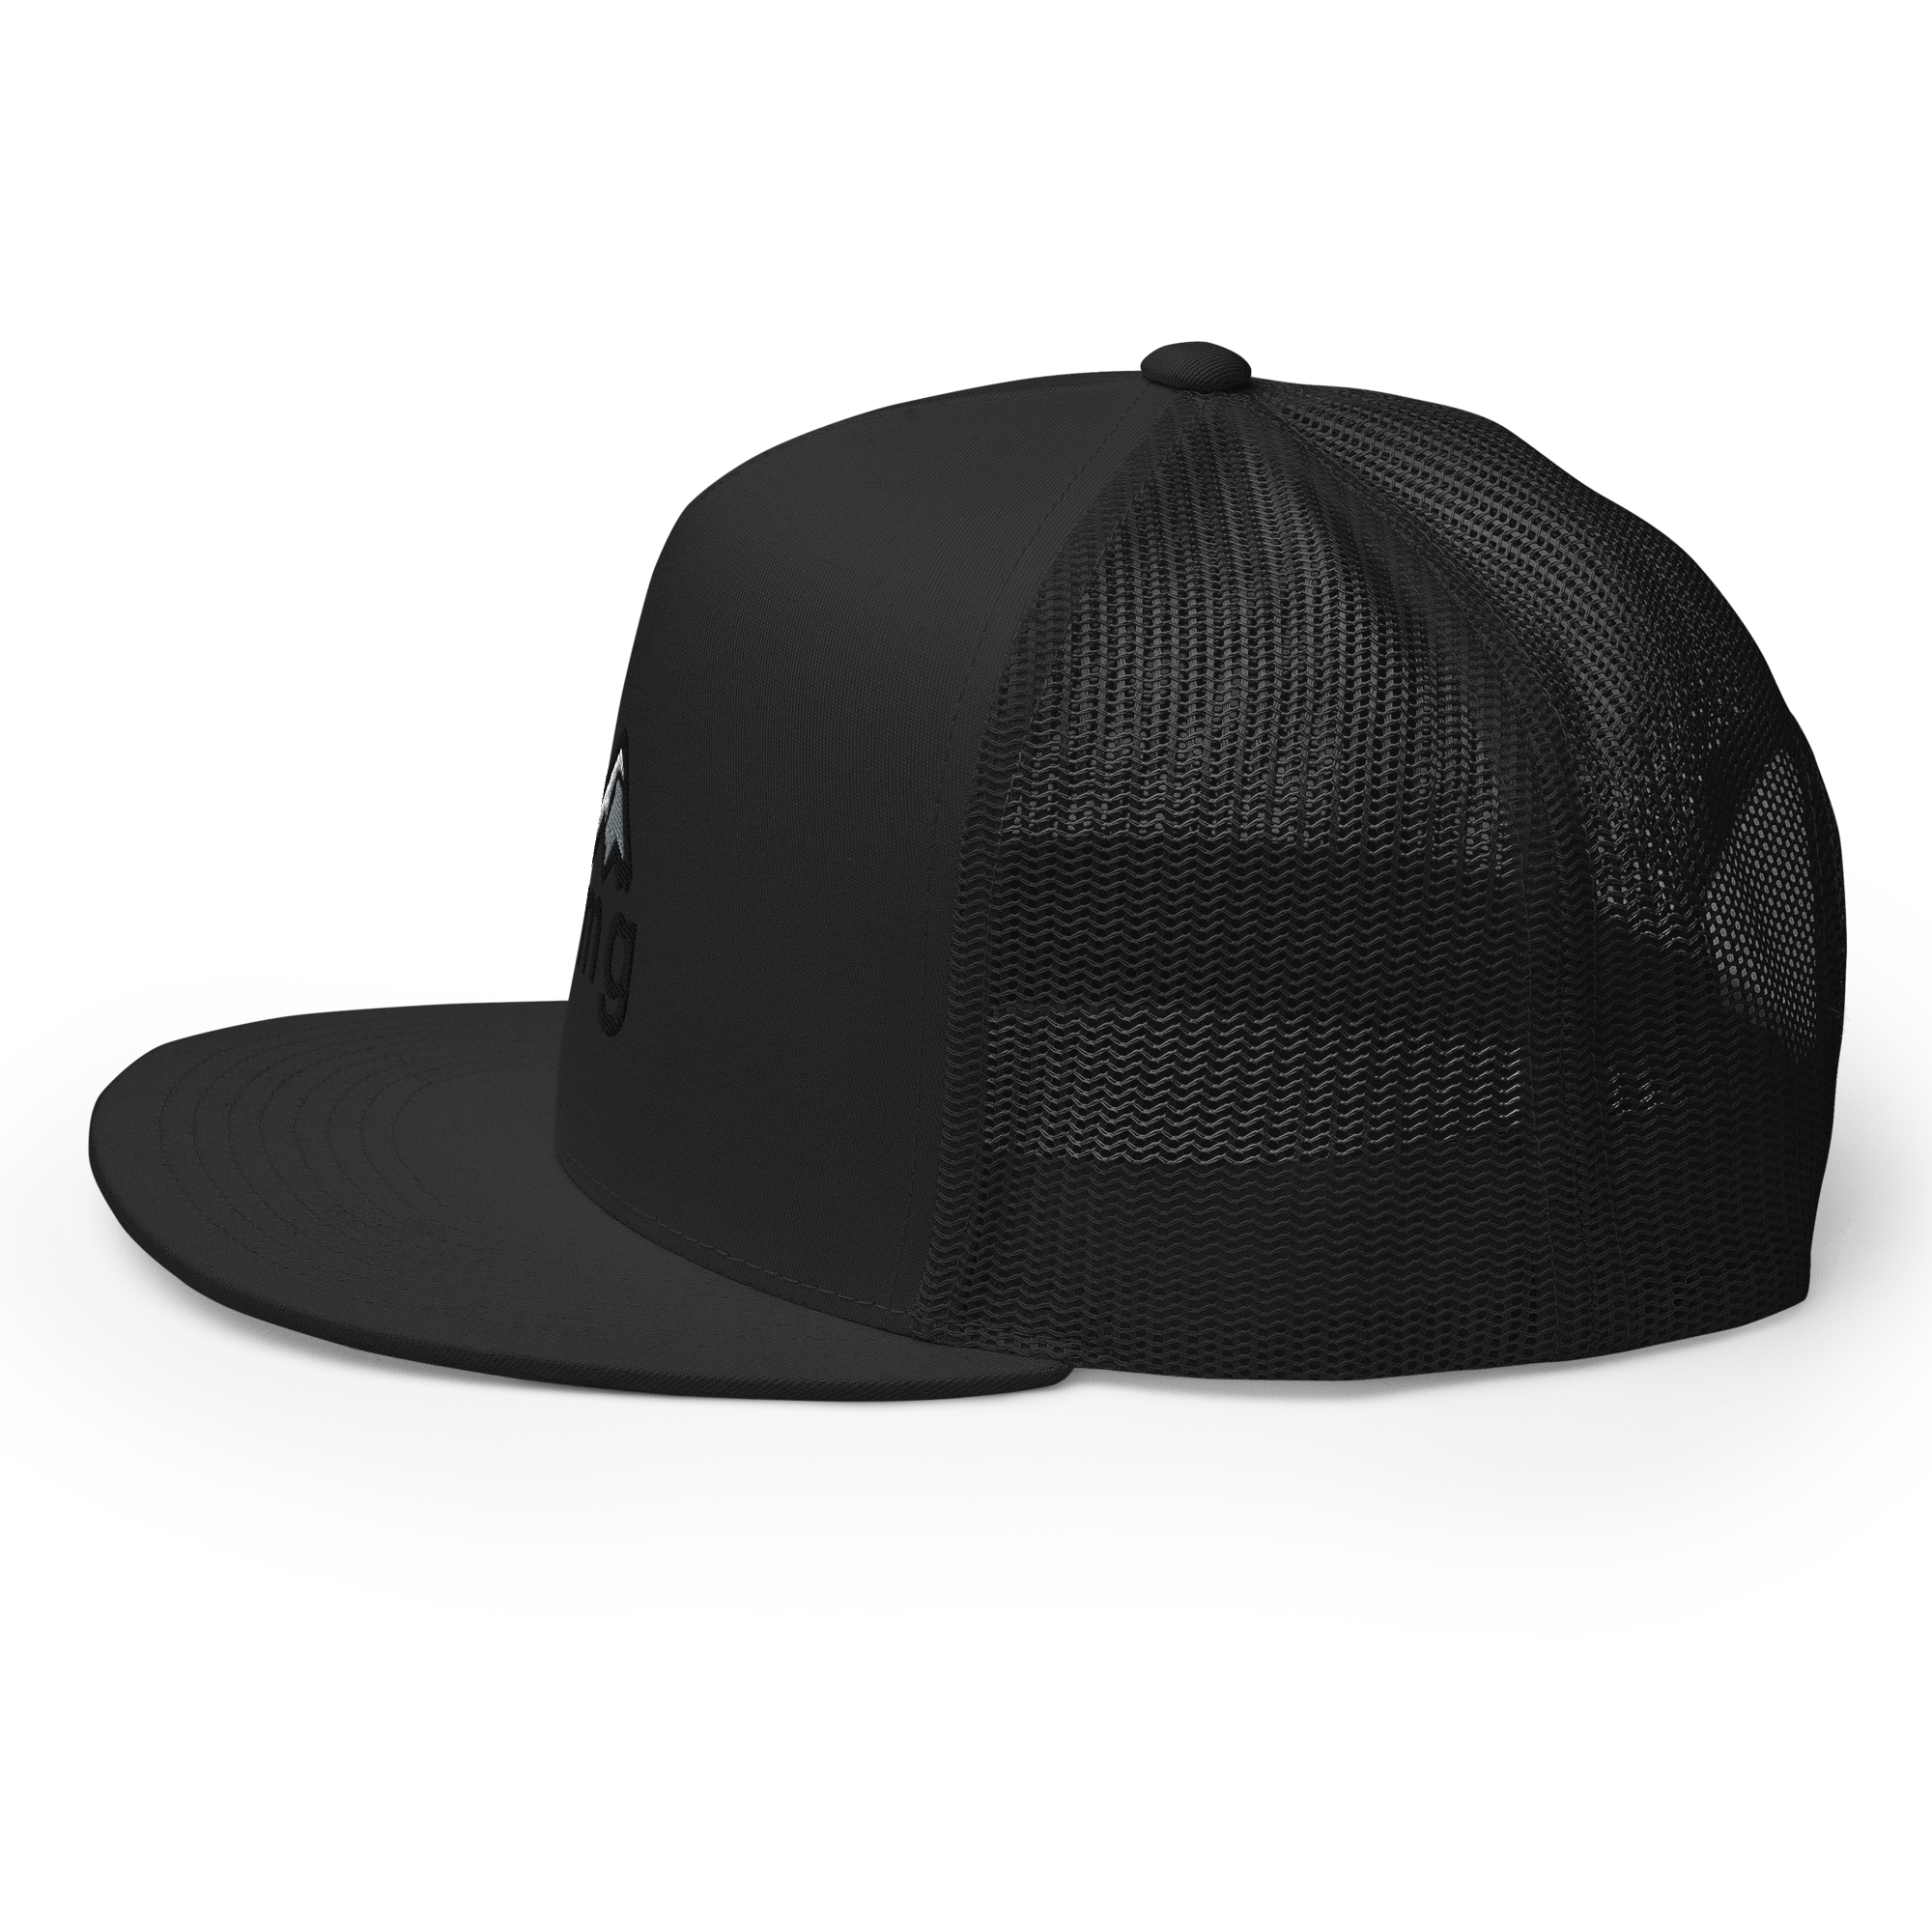 rmg low pro trucker hat black side view